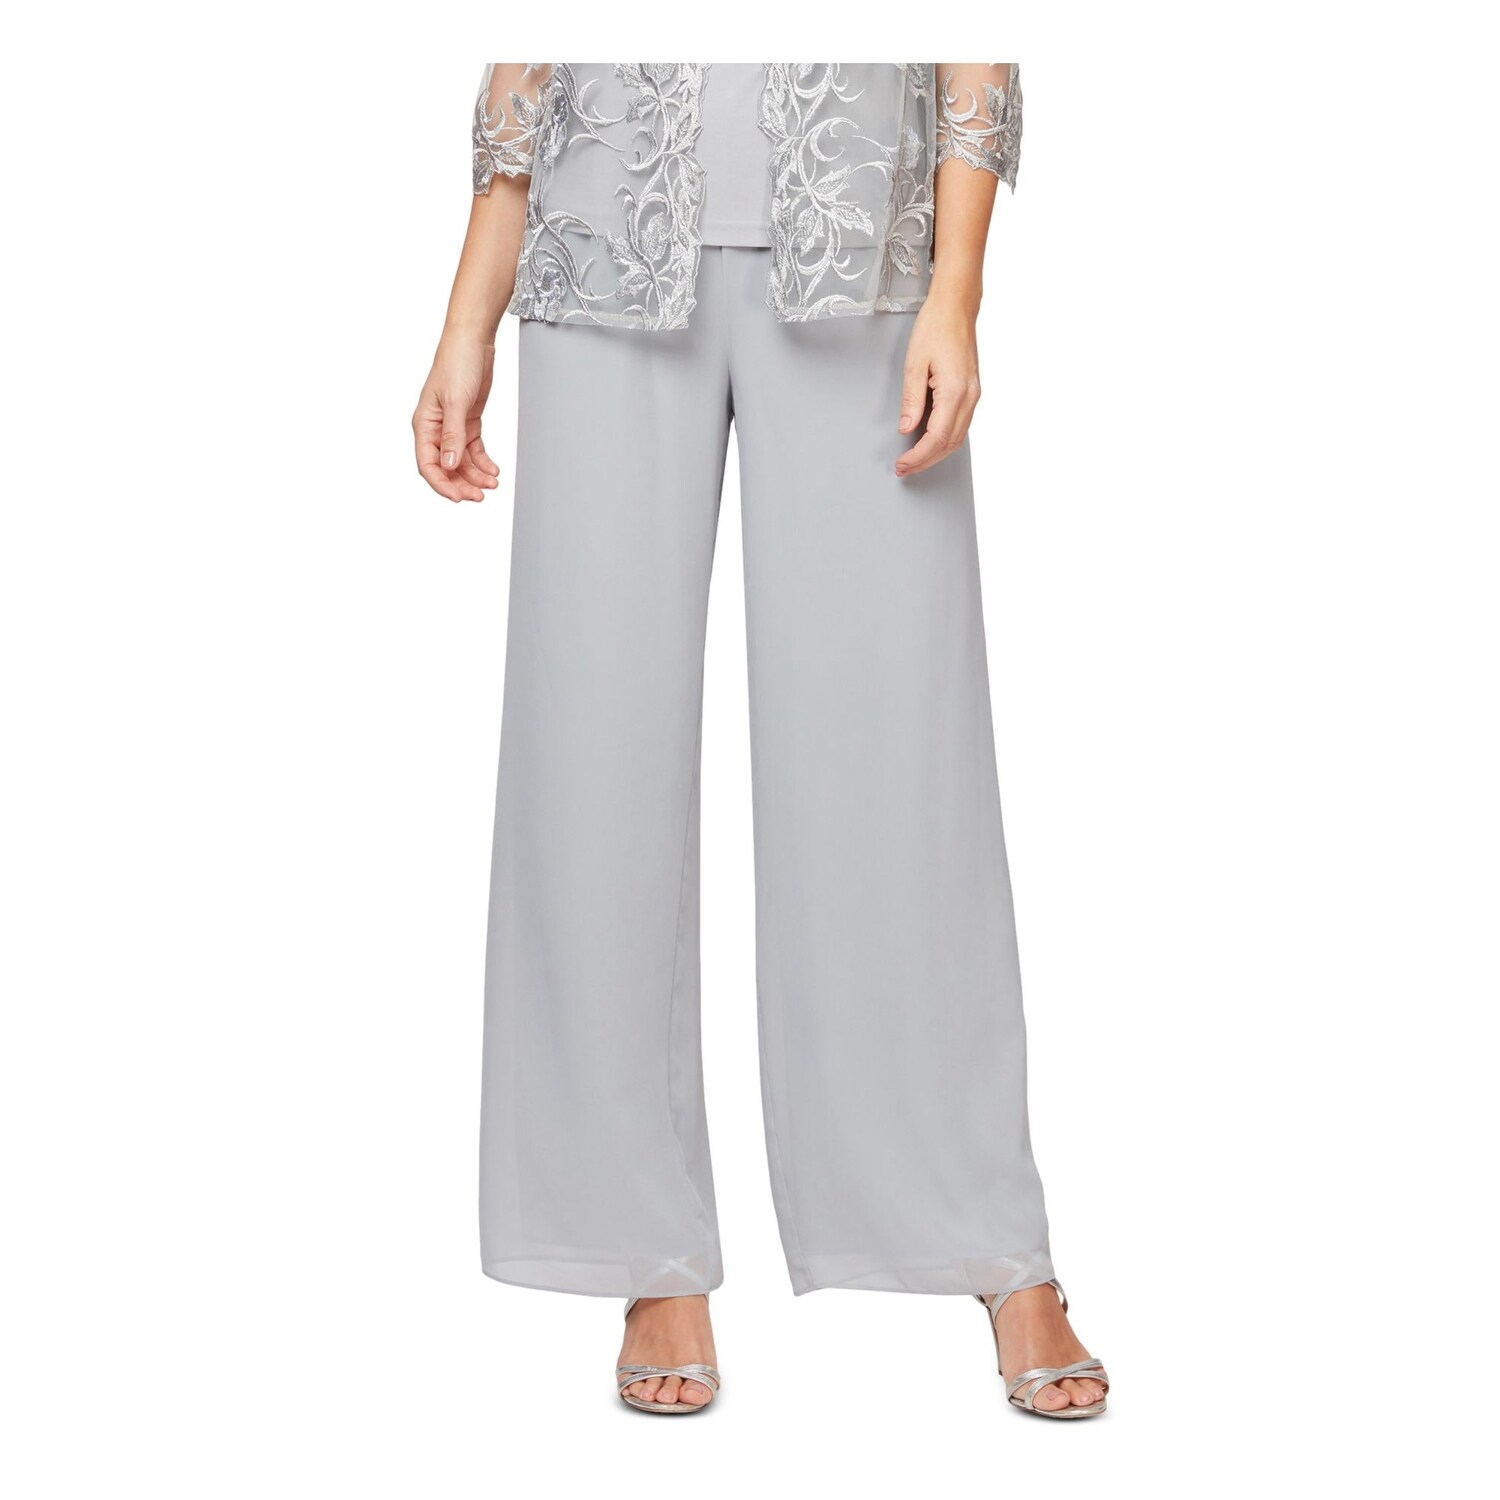 Belichamen tand technisch ALEX EVENINGS Womens Gray Sheer Solid Wide Leg Evening Pants Size XL -  Overstock - 33285435